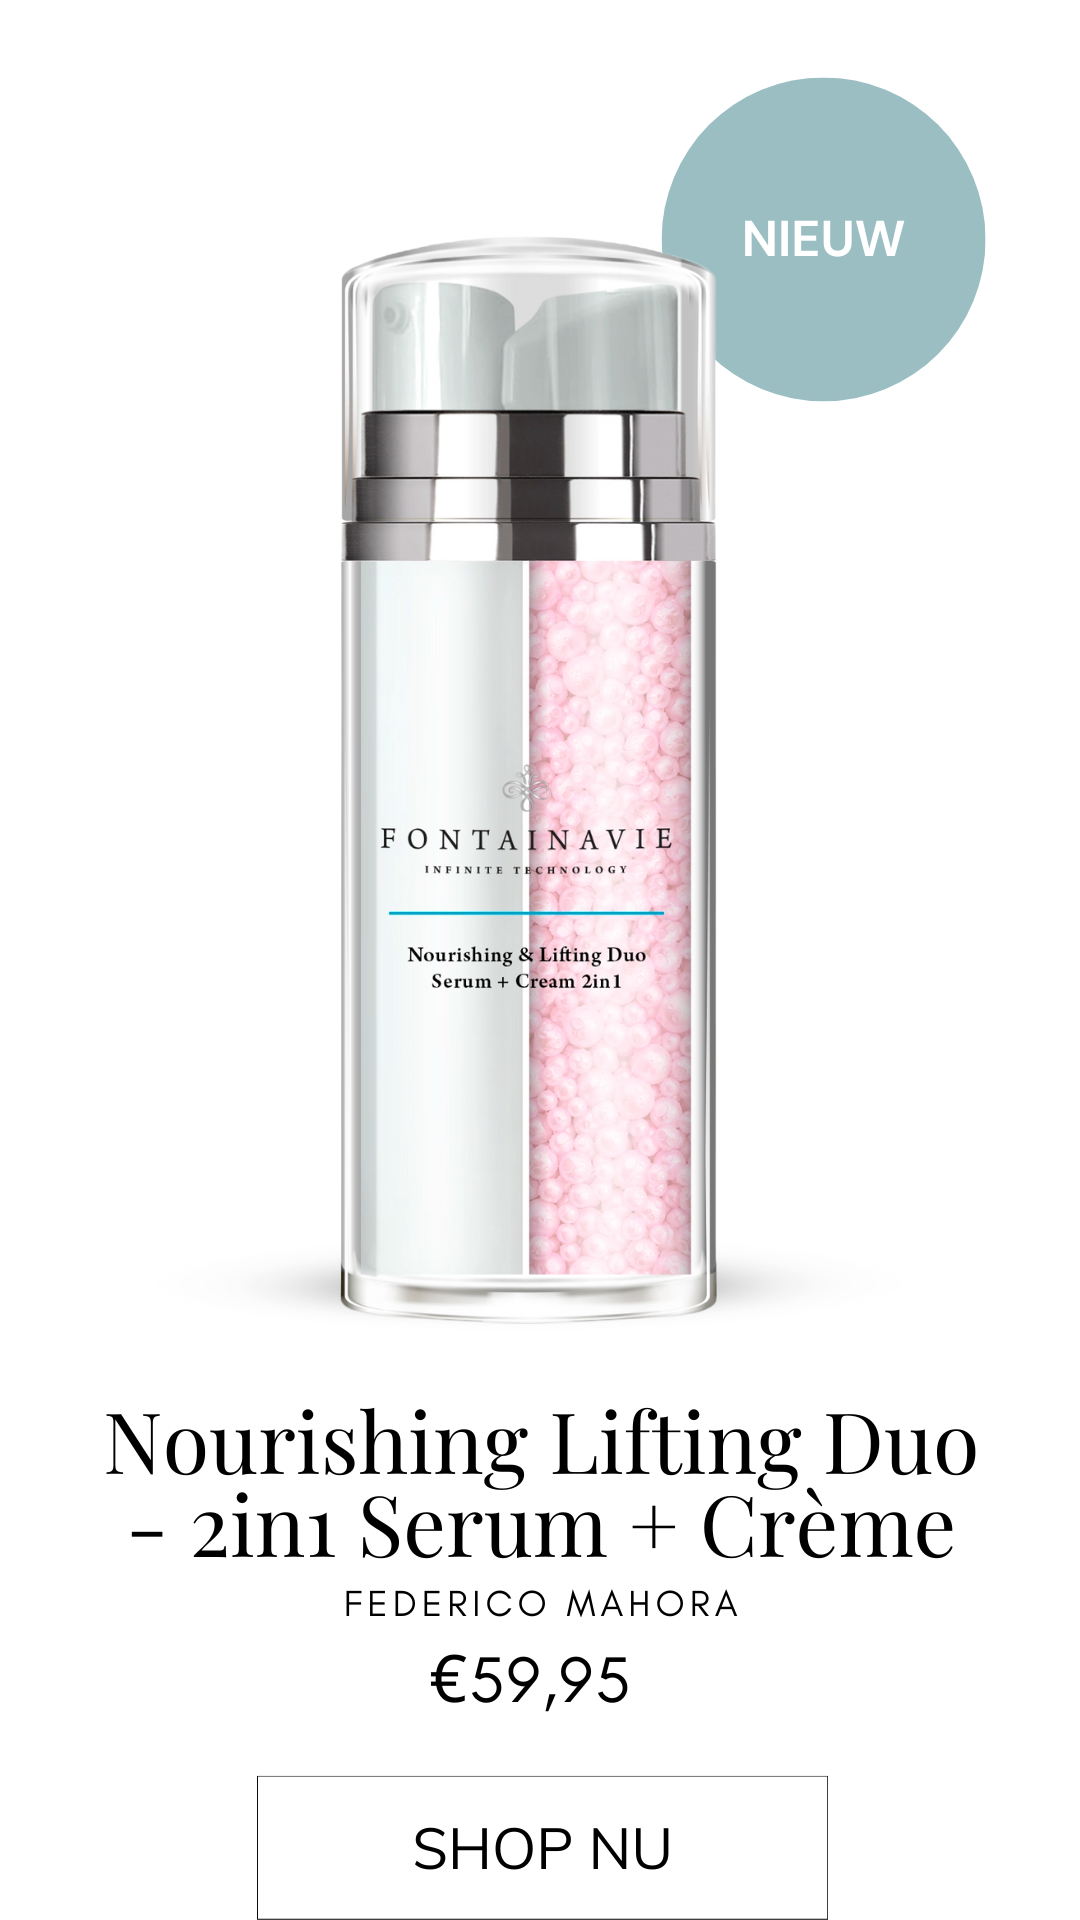 Parfumhuis | Nourishing & Lifting Duo - 2in1 Serum + Crème